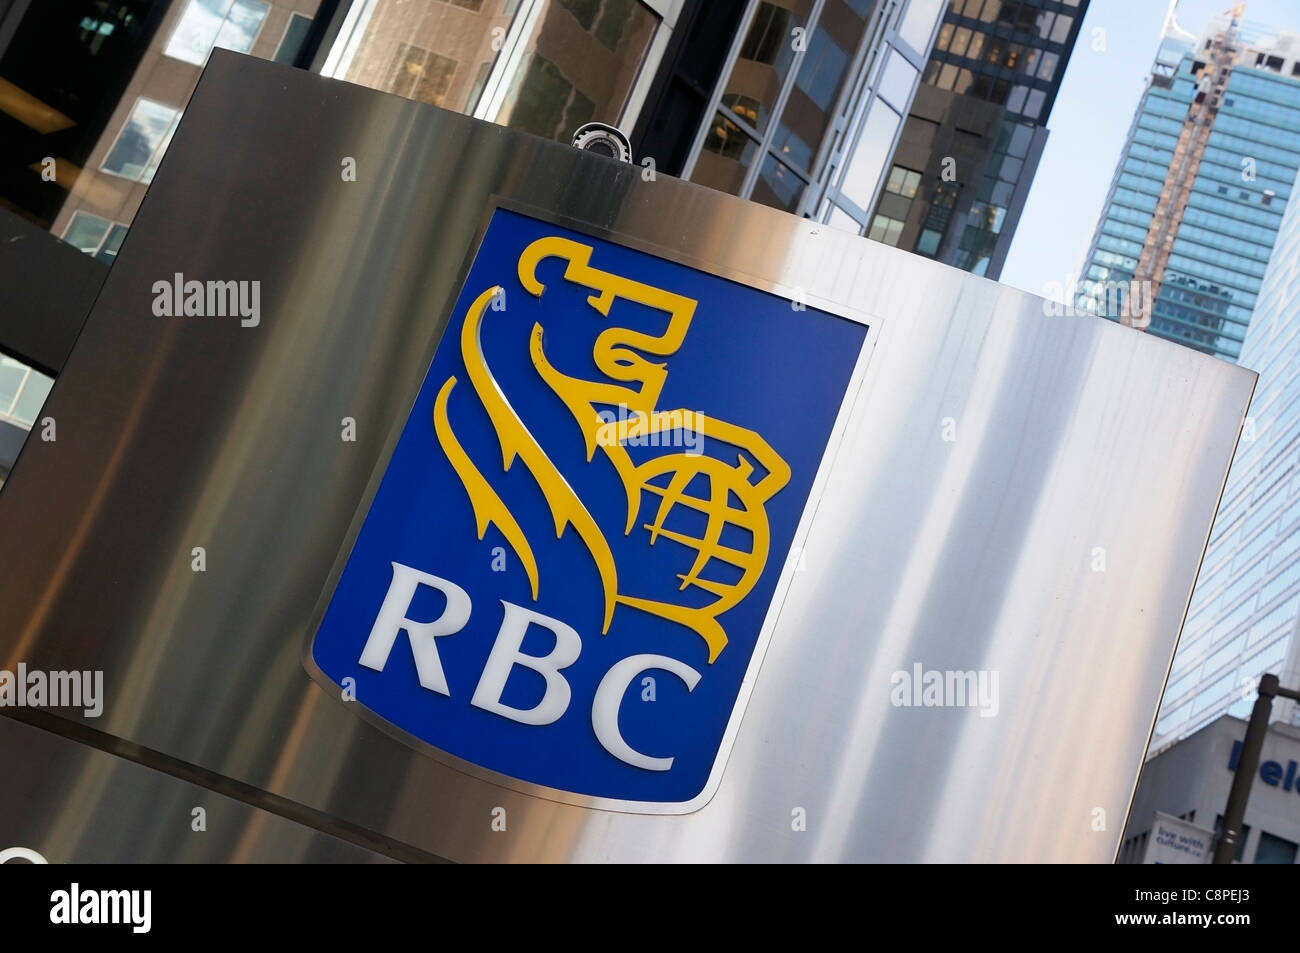 RBC Royal Bank of Canada Foto de stock